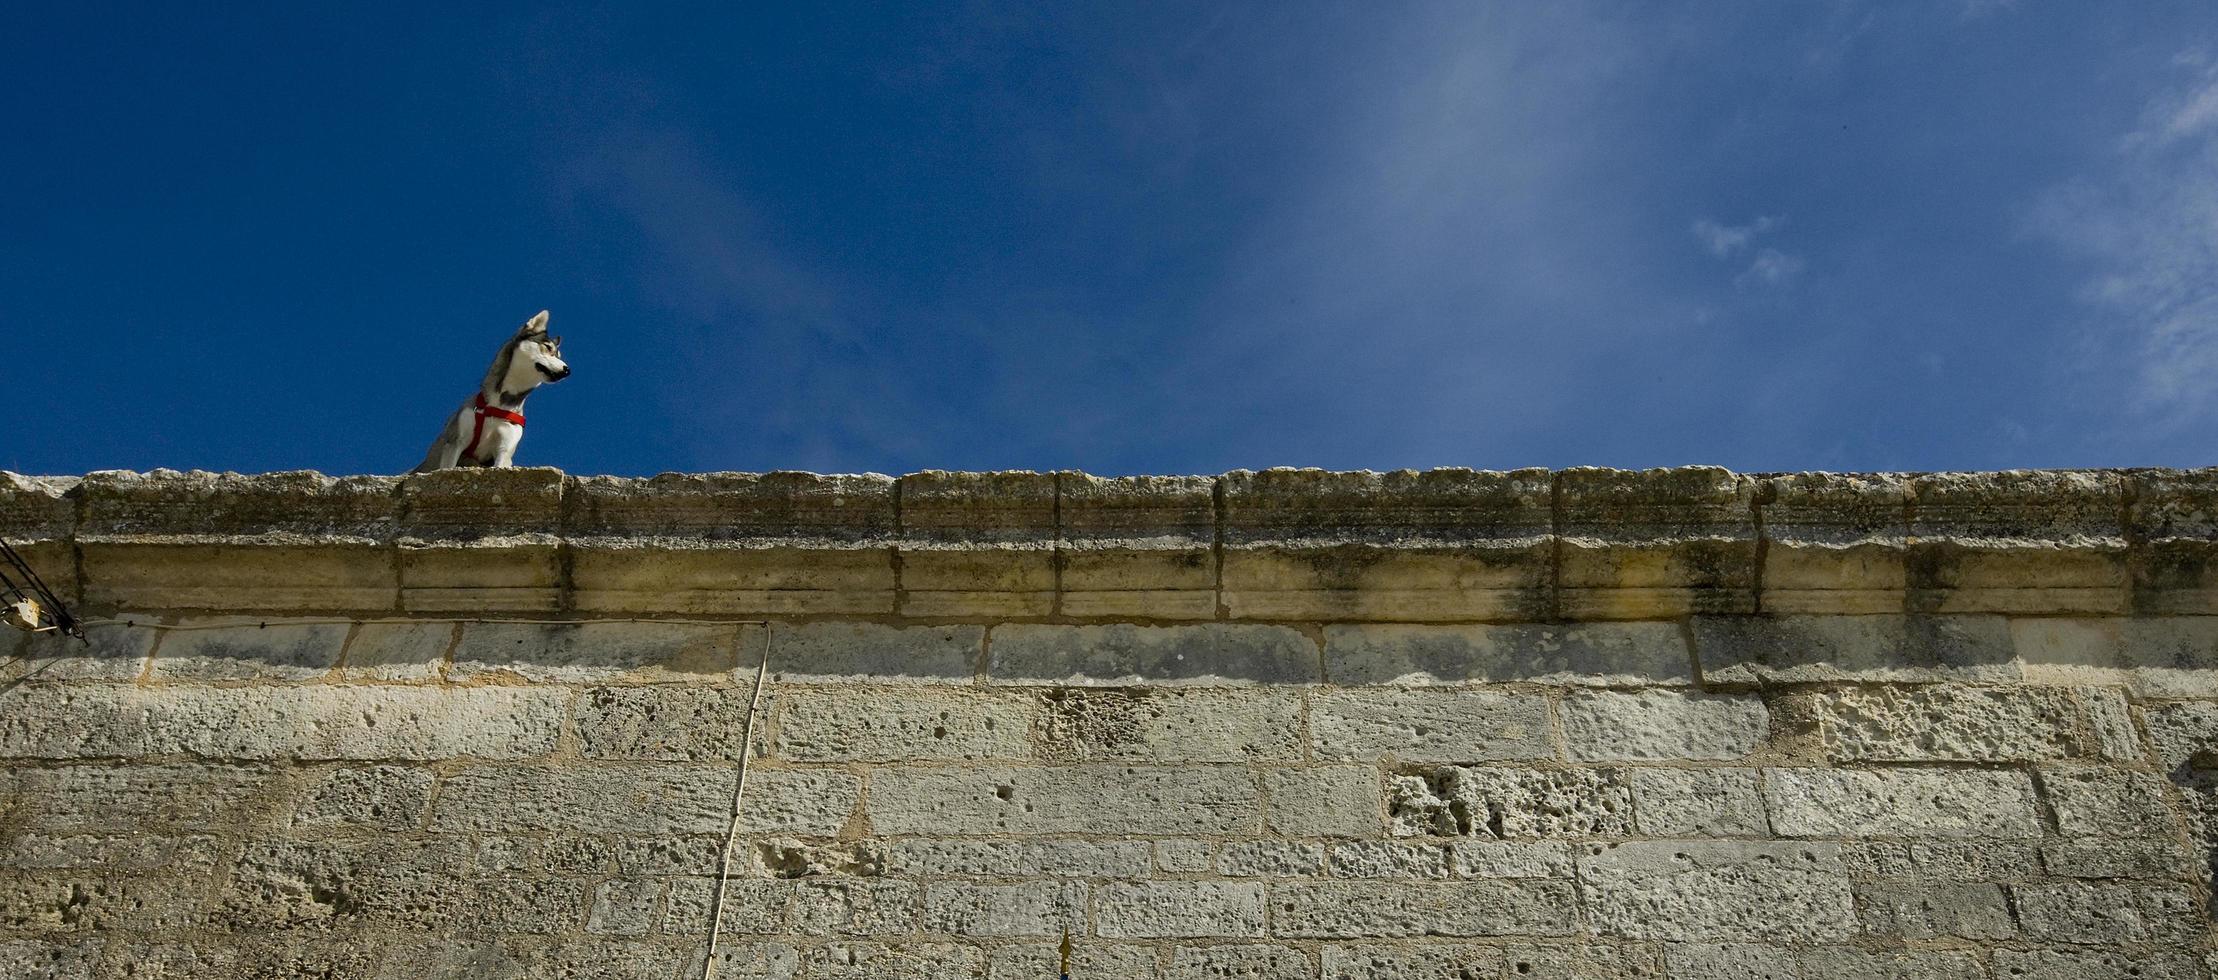 cane husky si è arrampicato sul muro di pietra della vecchia fucina royal royal battuto, nella provincia marittima della charente, francia foto